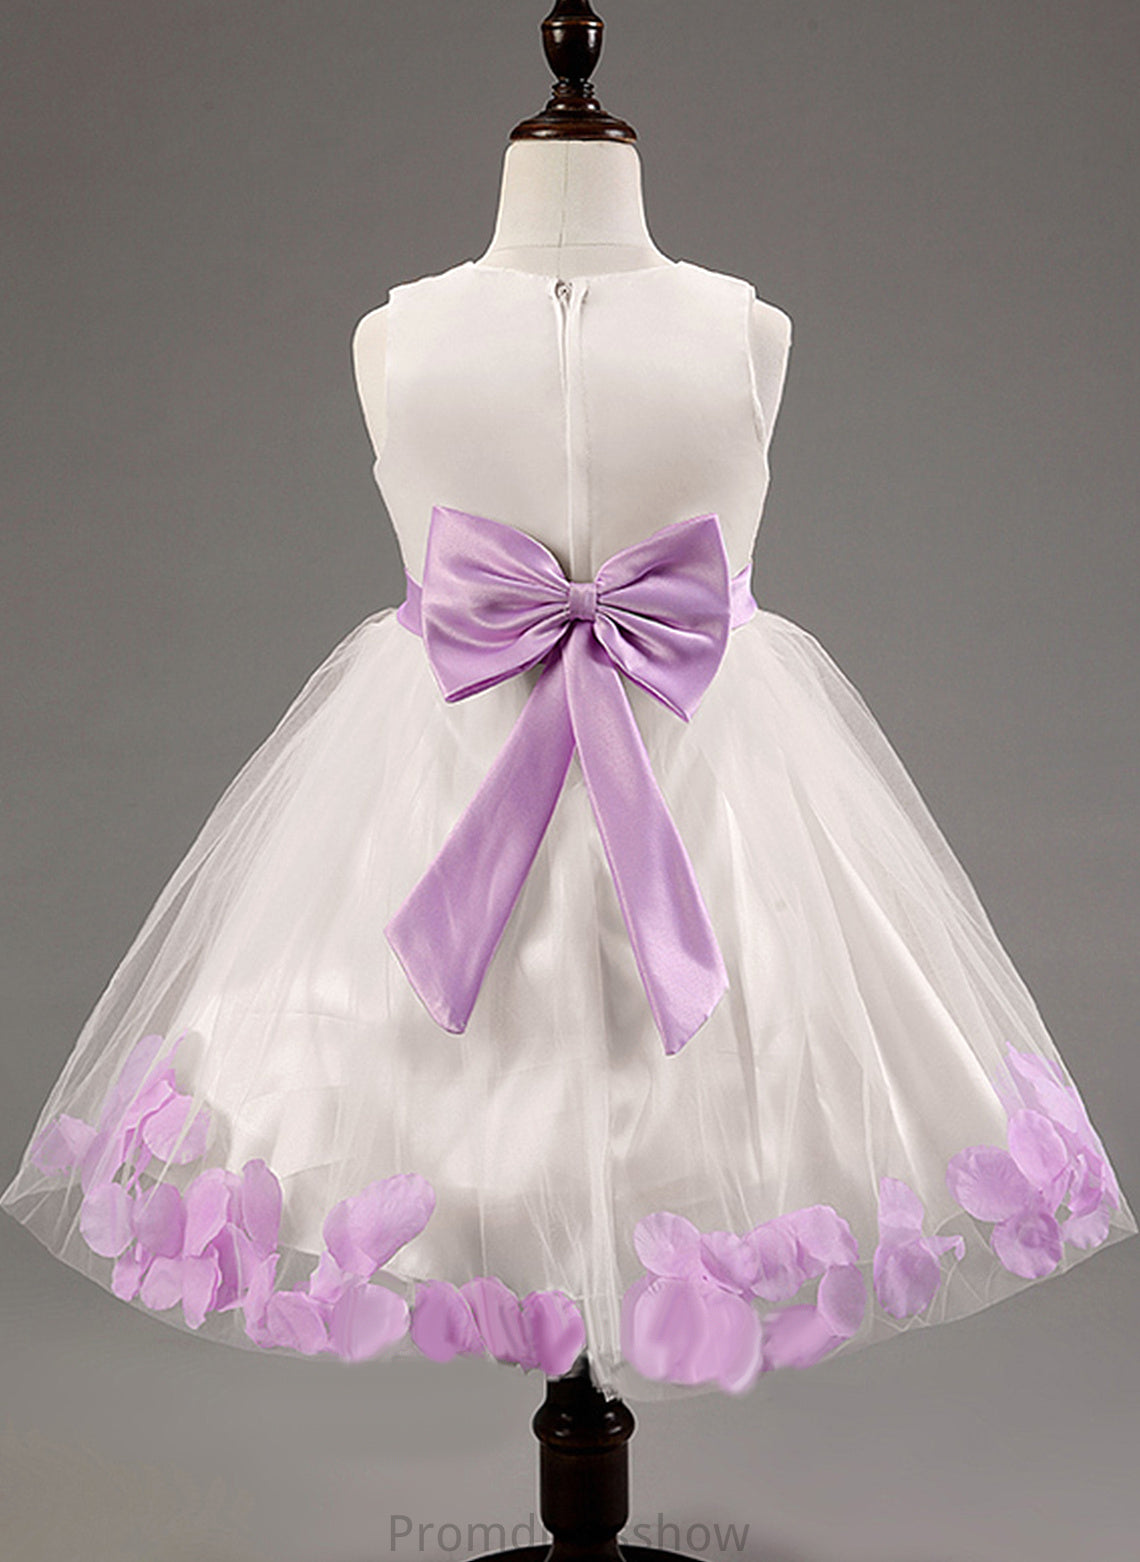 Flower Gown - Cotton LuLu Scoop Dress Girl Flower(s)/Bow(s) With Knee-length Sleeveless Ball Flower Girl Dresses Neck Blends